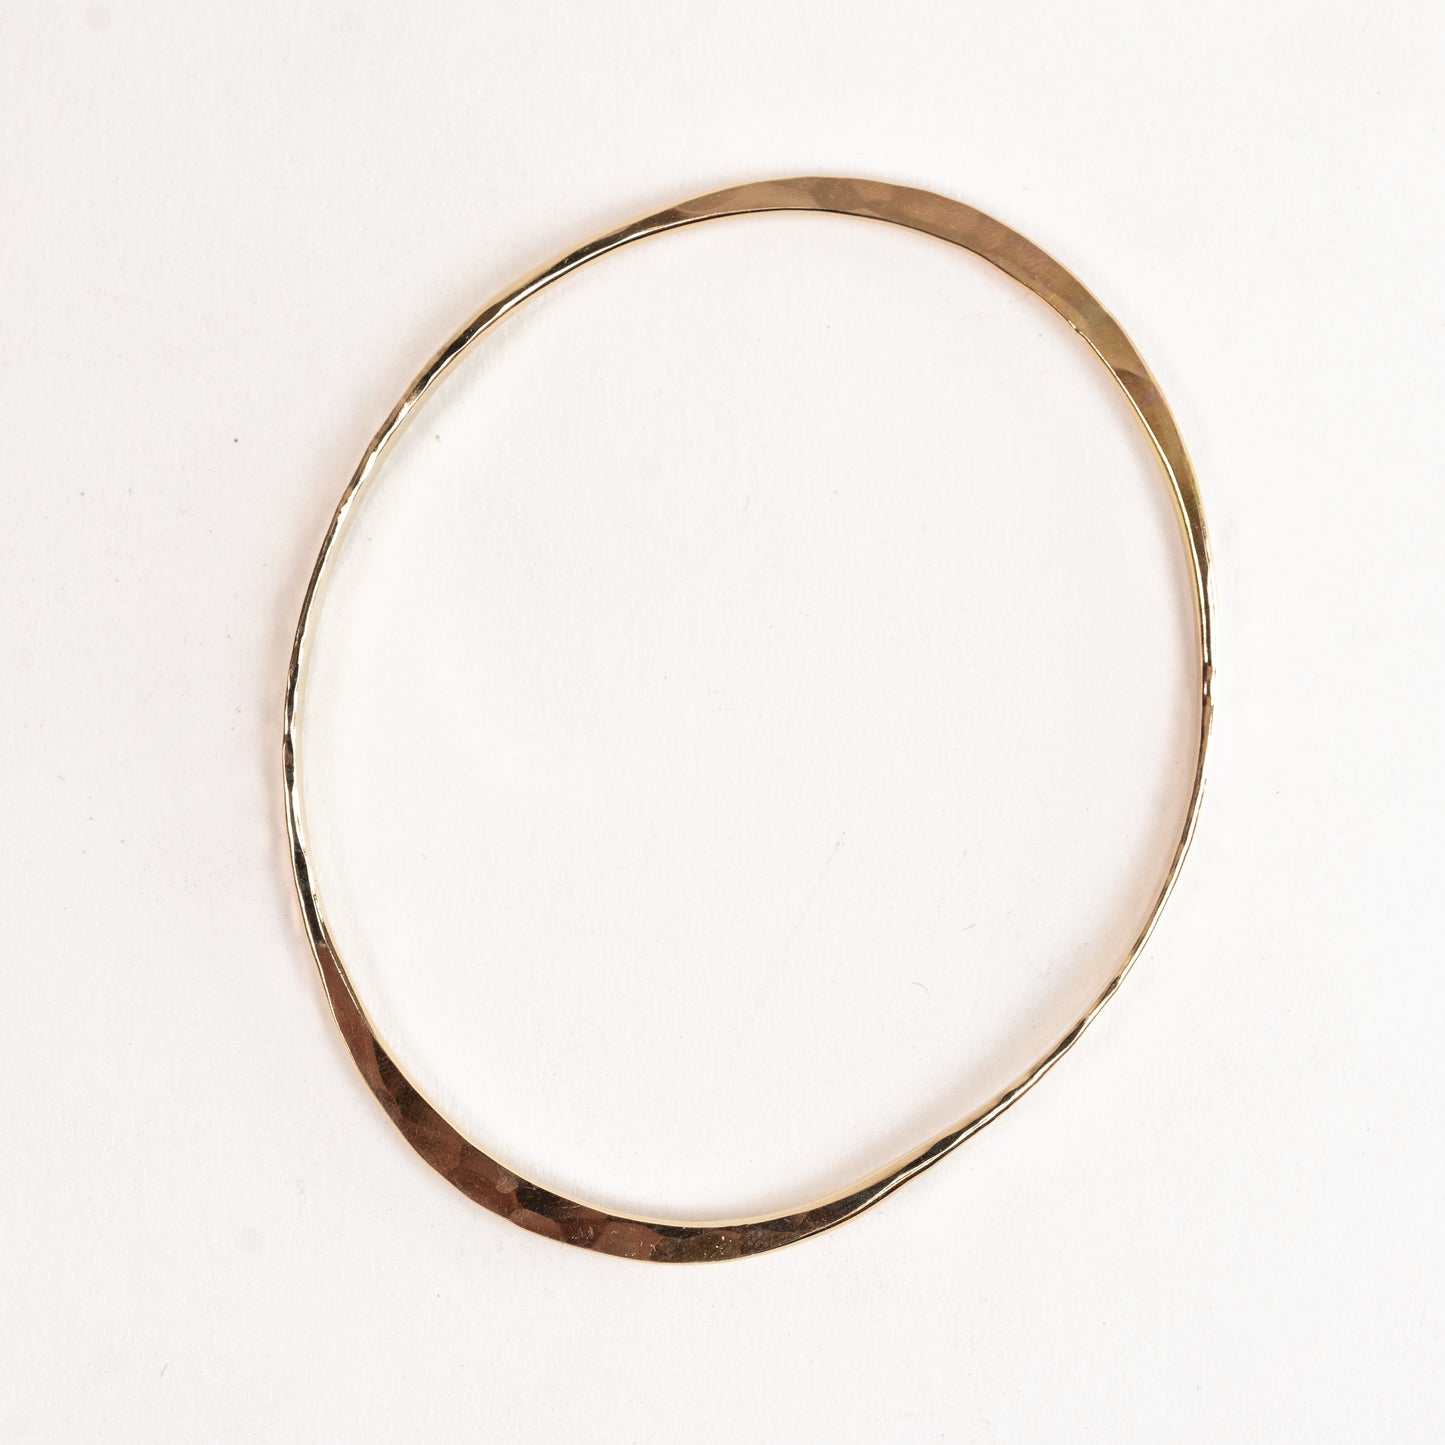 Bangle Bracelet - Gold filled Custom hand forged Oval